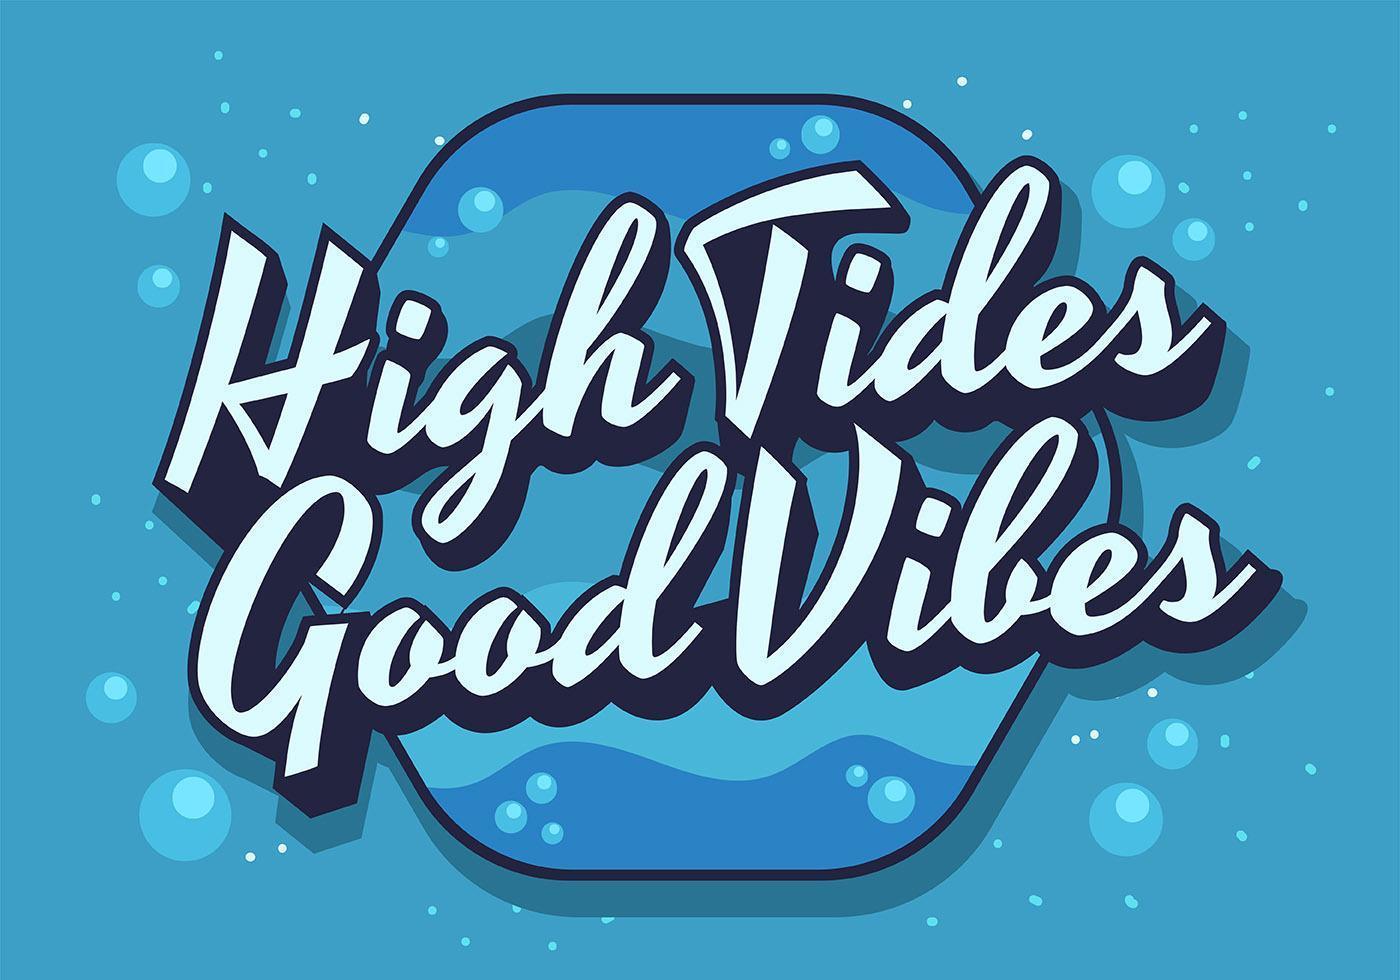 High Tides Good Vibes Lettering. vetor